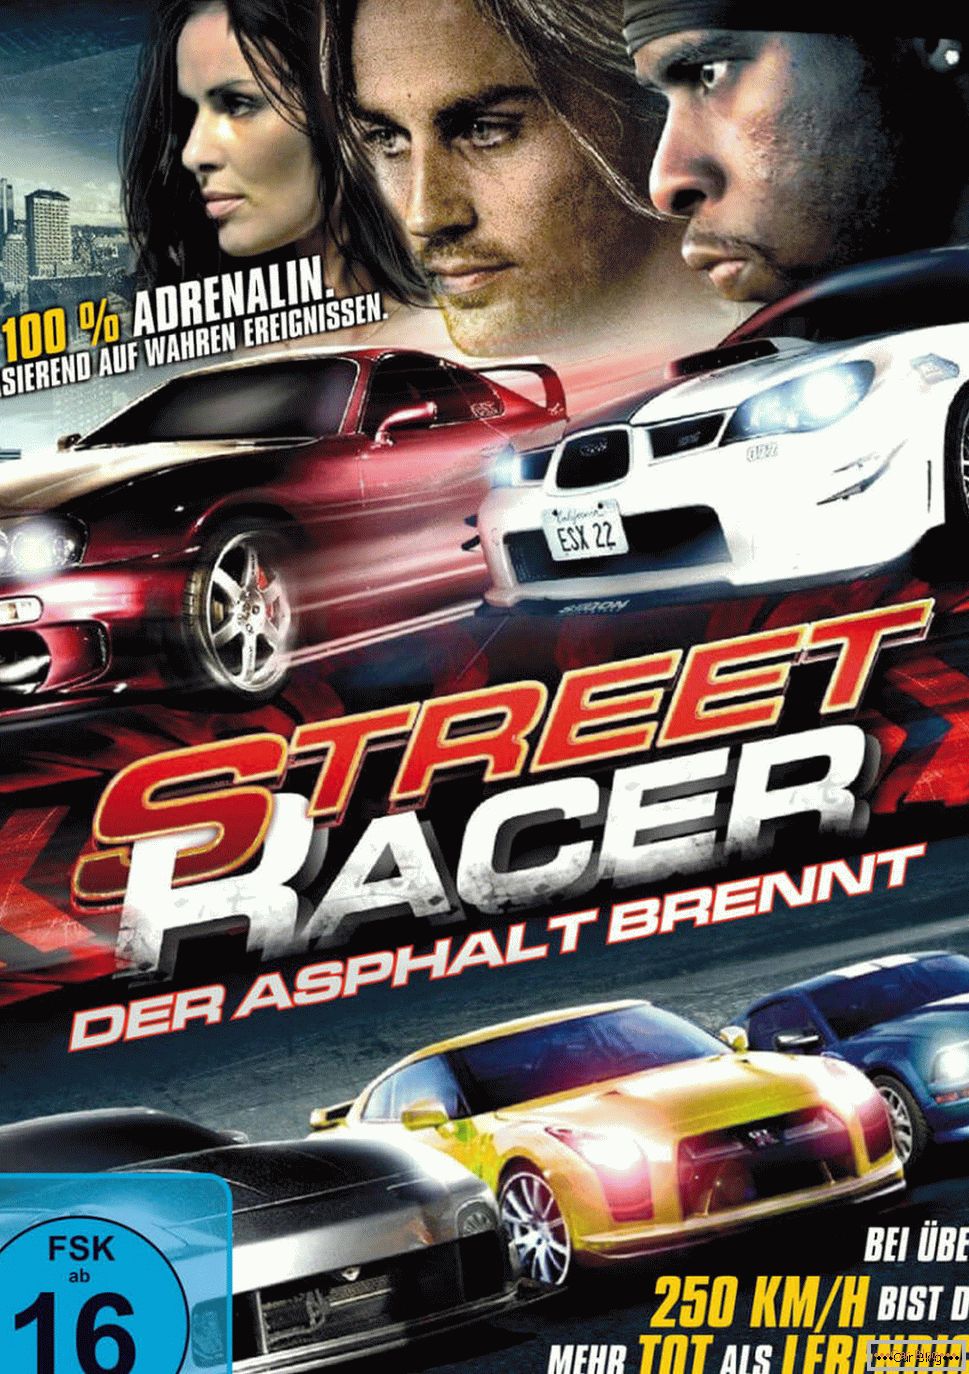 Plakat für den Film Street Racer